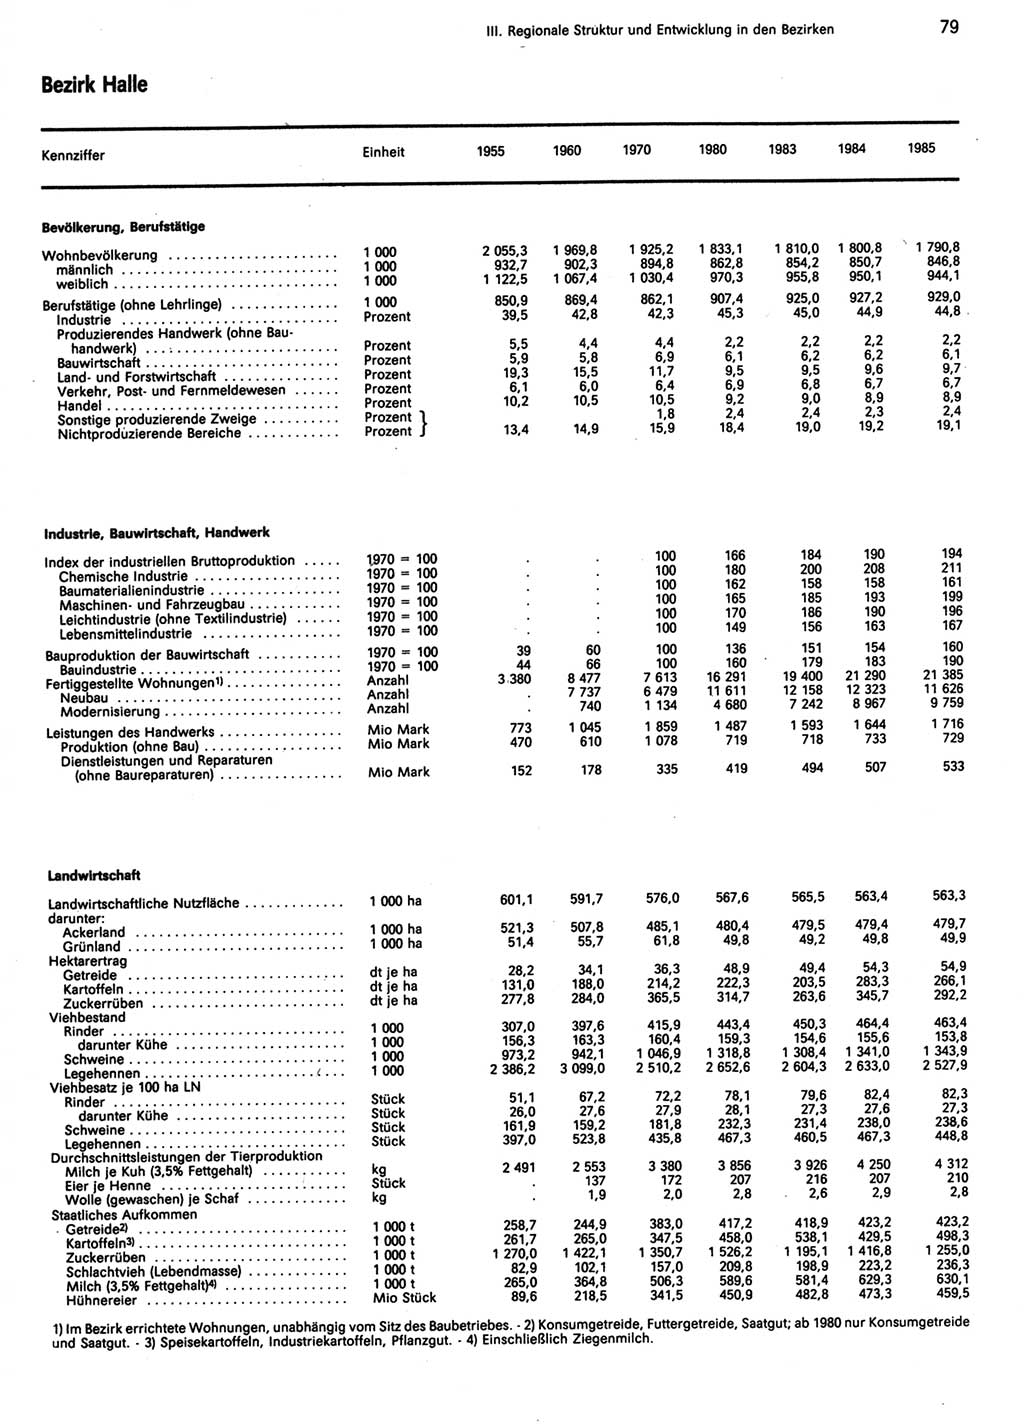 Statistisches Jahrbuch der Deutschen Demokratischen Republik (DDR) 1986, Seite 79 (Stat. Jb. DDR 1986, S. 79)